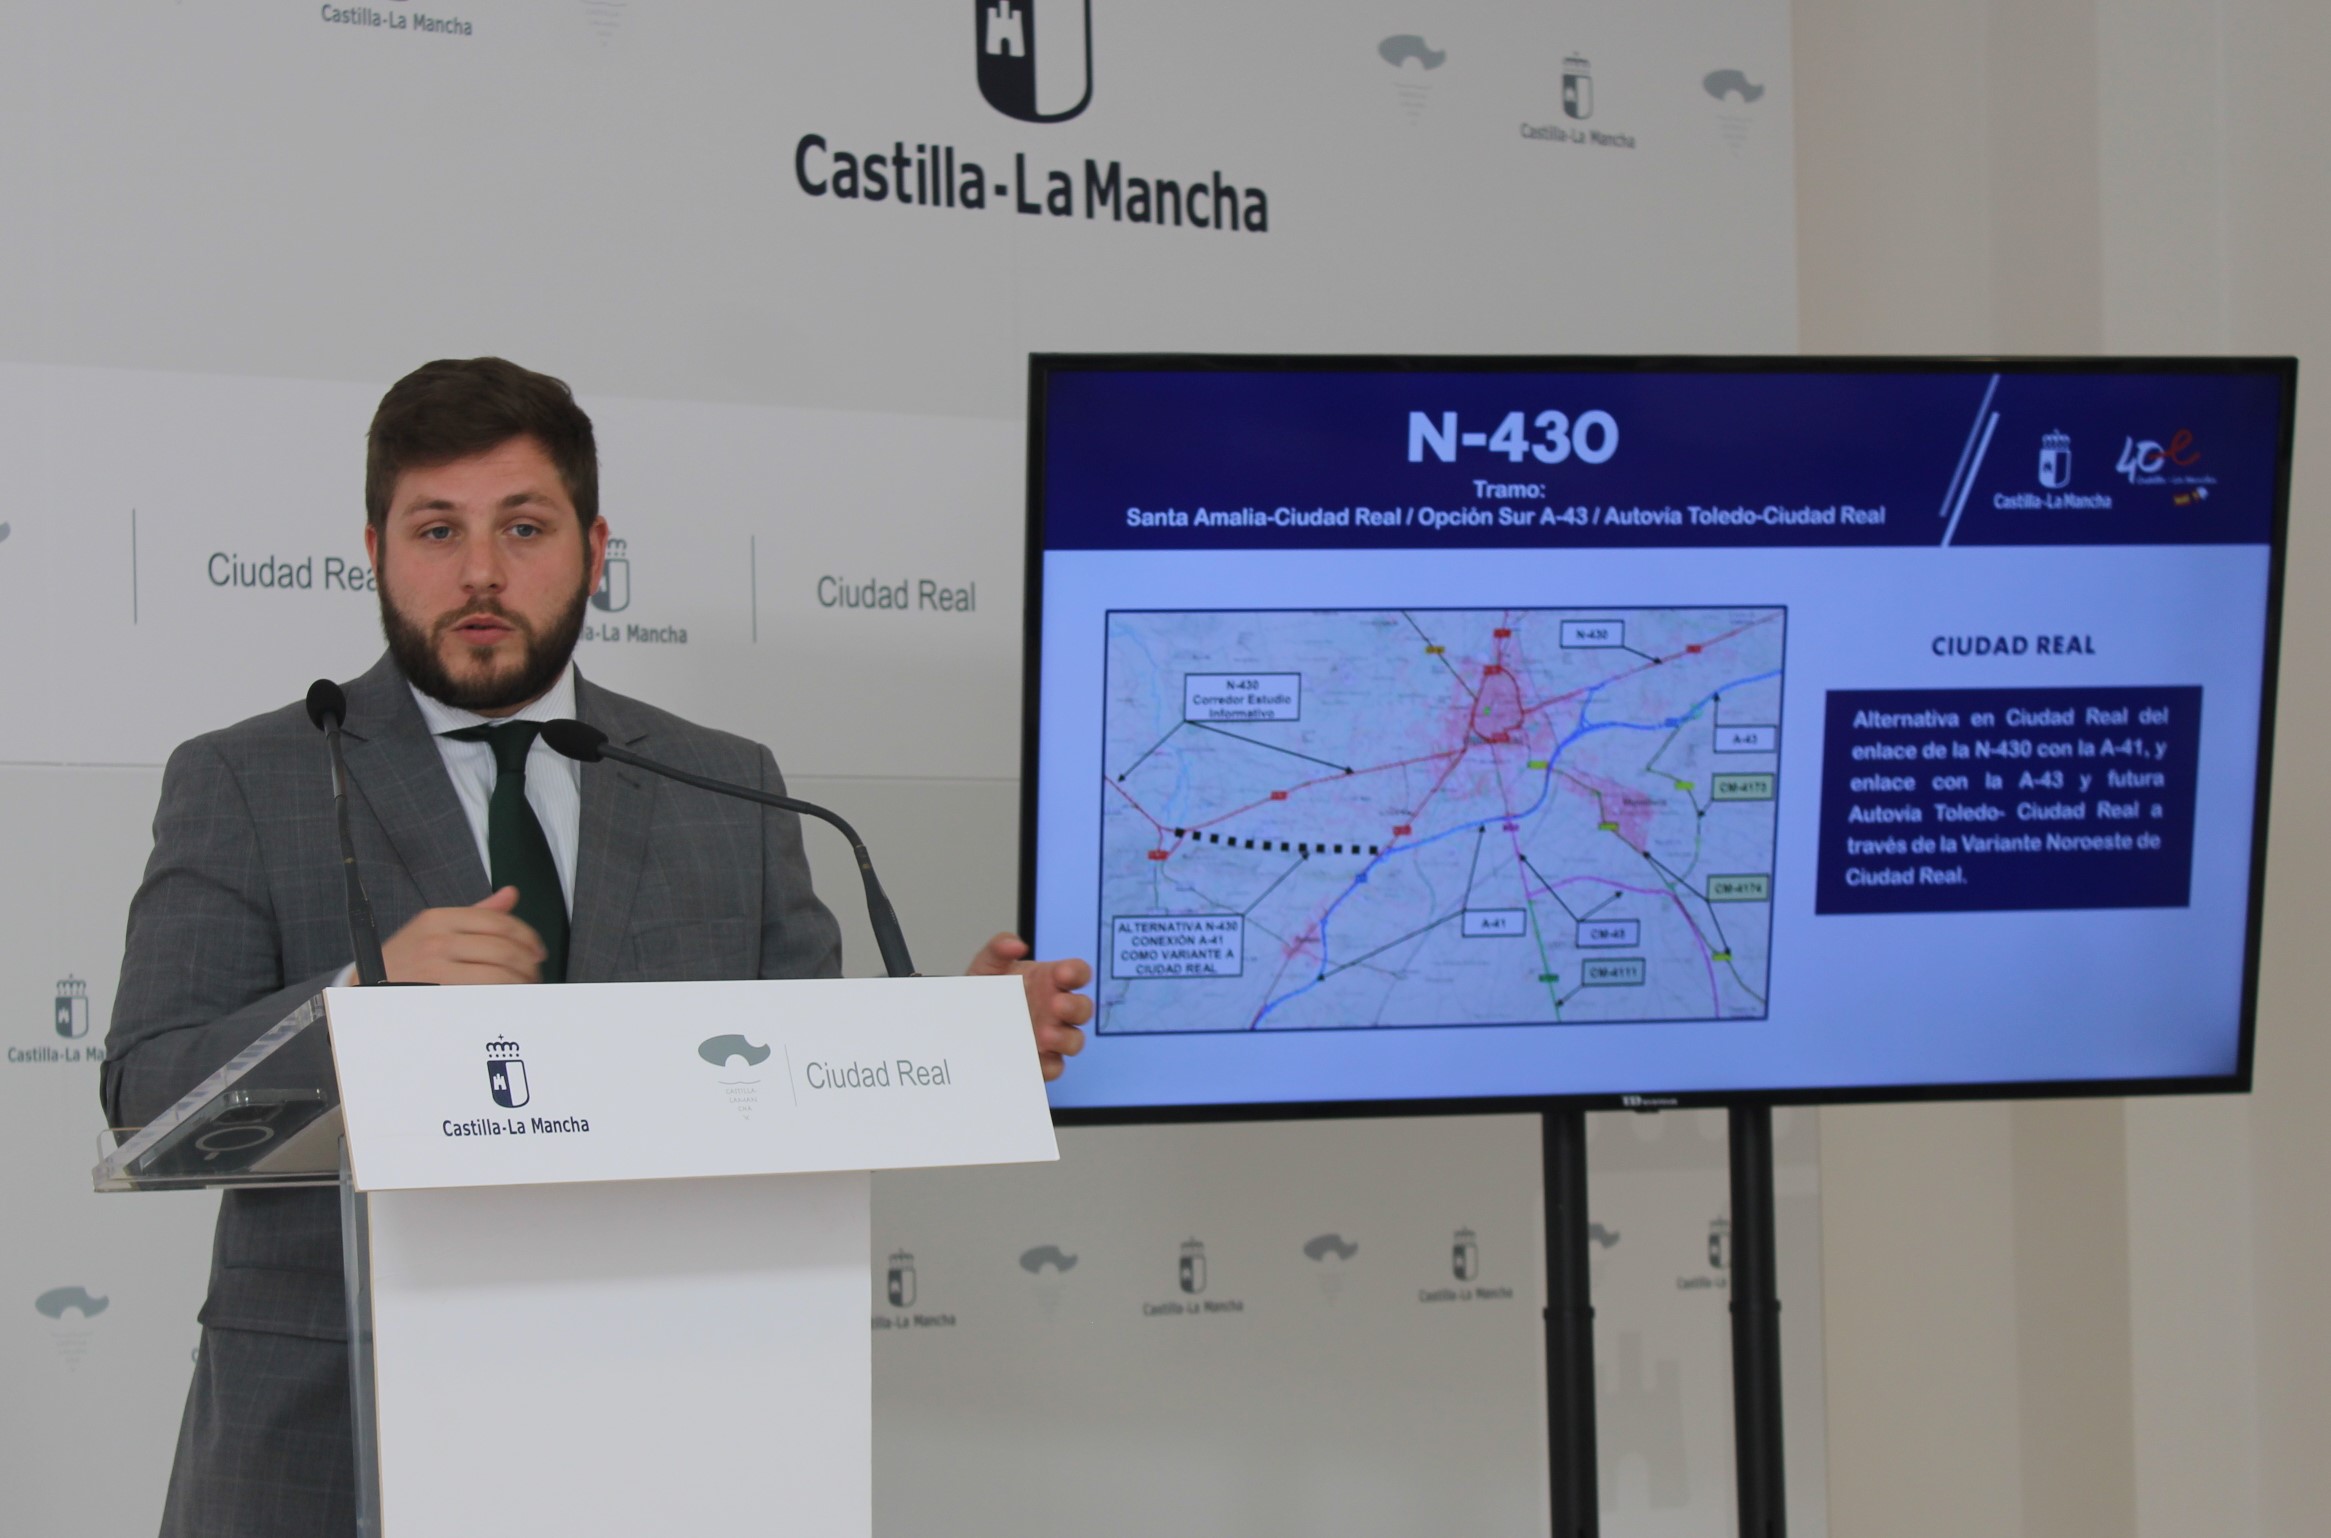 El Gobierno de Castilla-La Mancha presenta alegaciones al estudio de impacto ambiental de la mejora de la N-430 y reitera su apuesta por la opción Sur de la A-43